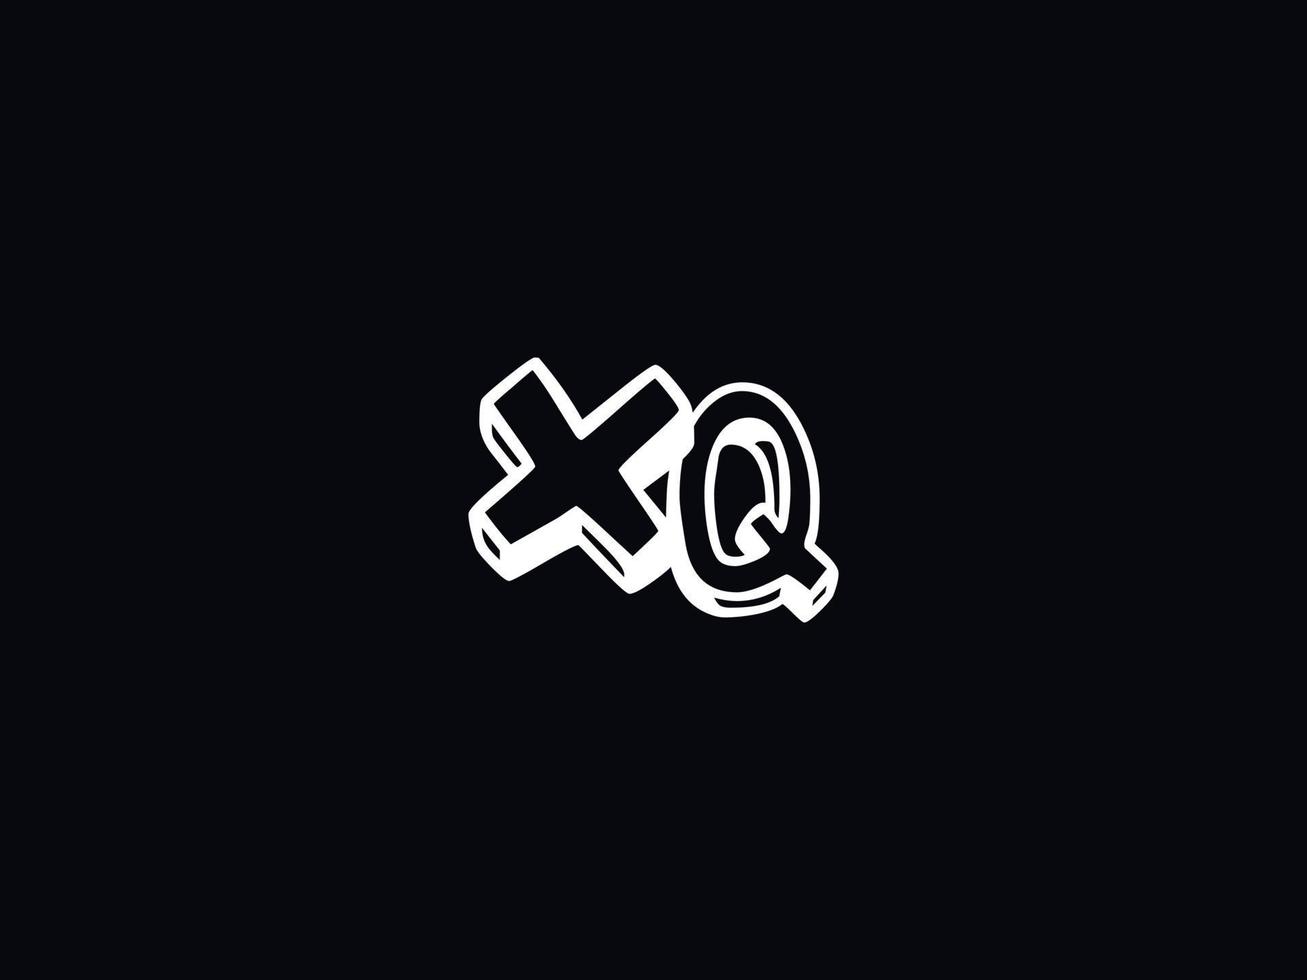 Monogramm xq Logo Brief, minimal xq bunt Logo Design vektor